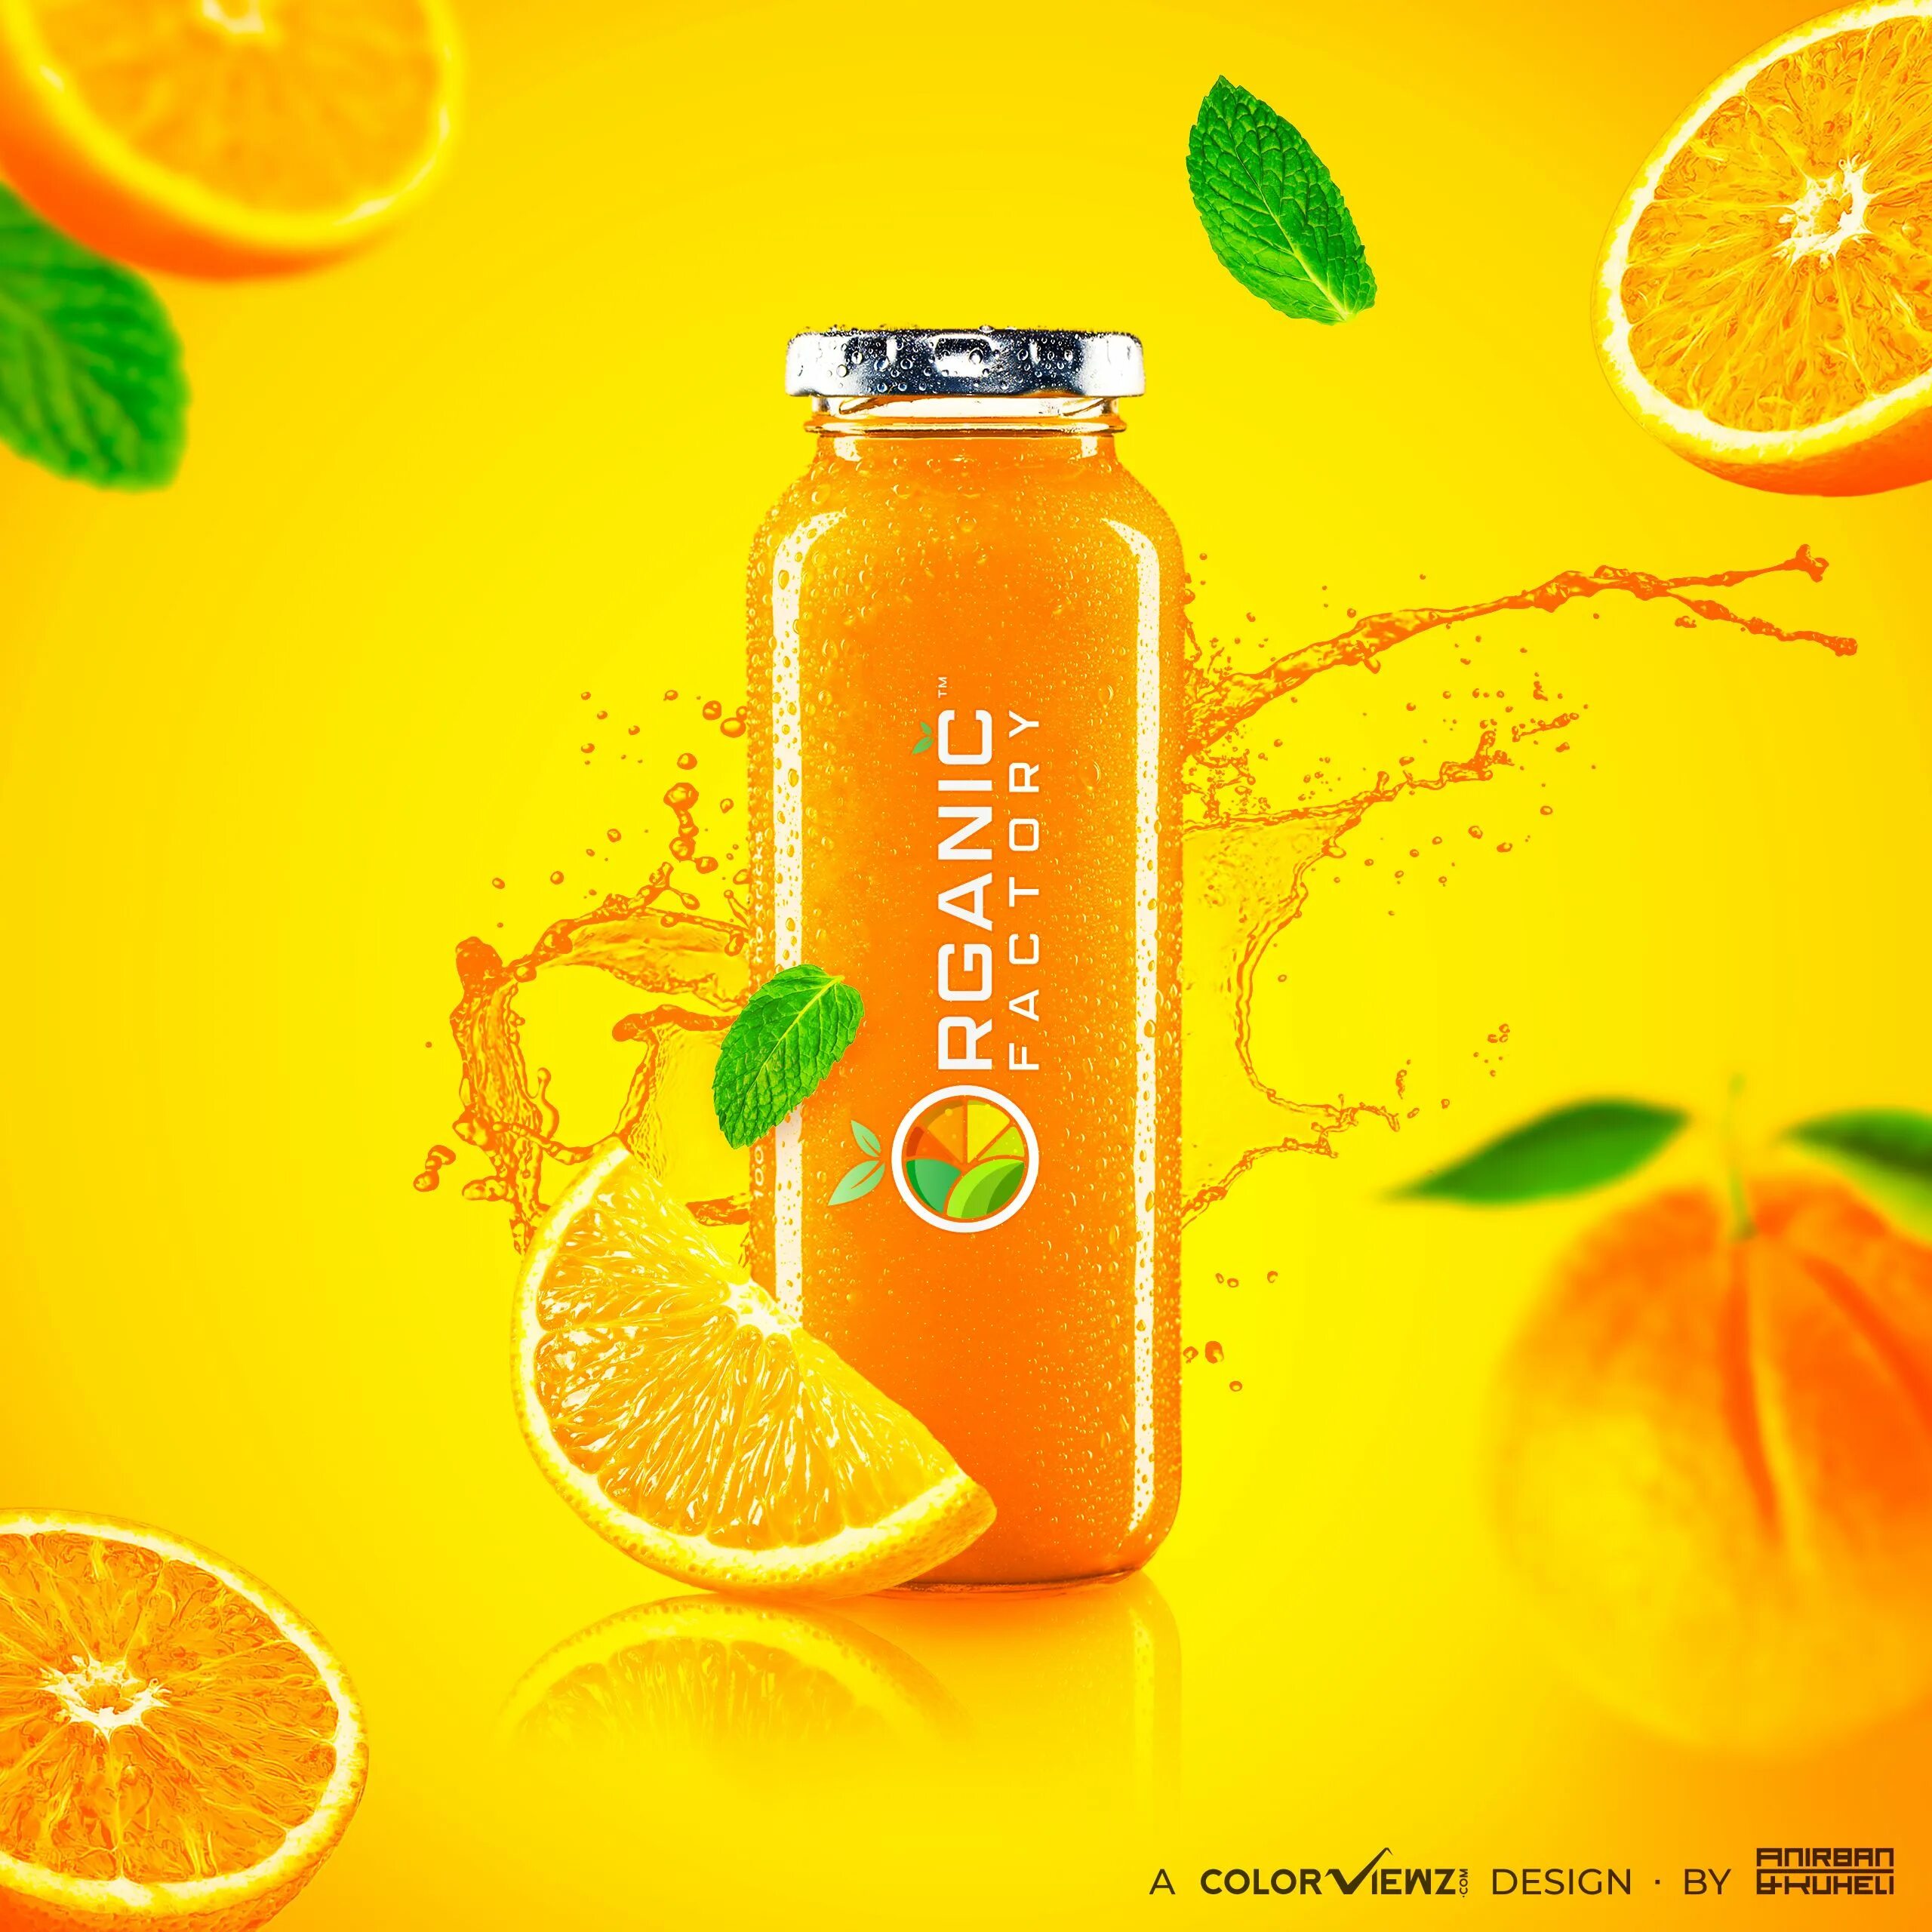 Оранж Джус оранж Джус. Оранжевый смузи. Сок Organic апельсин. Апельсиновый сок Постер. Сладкие вина фреш